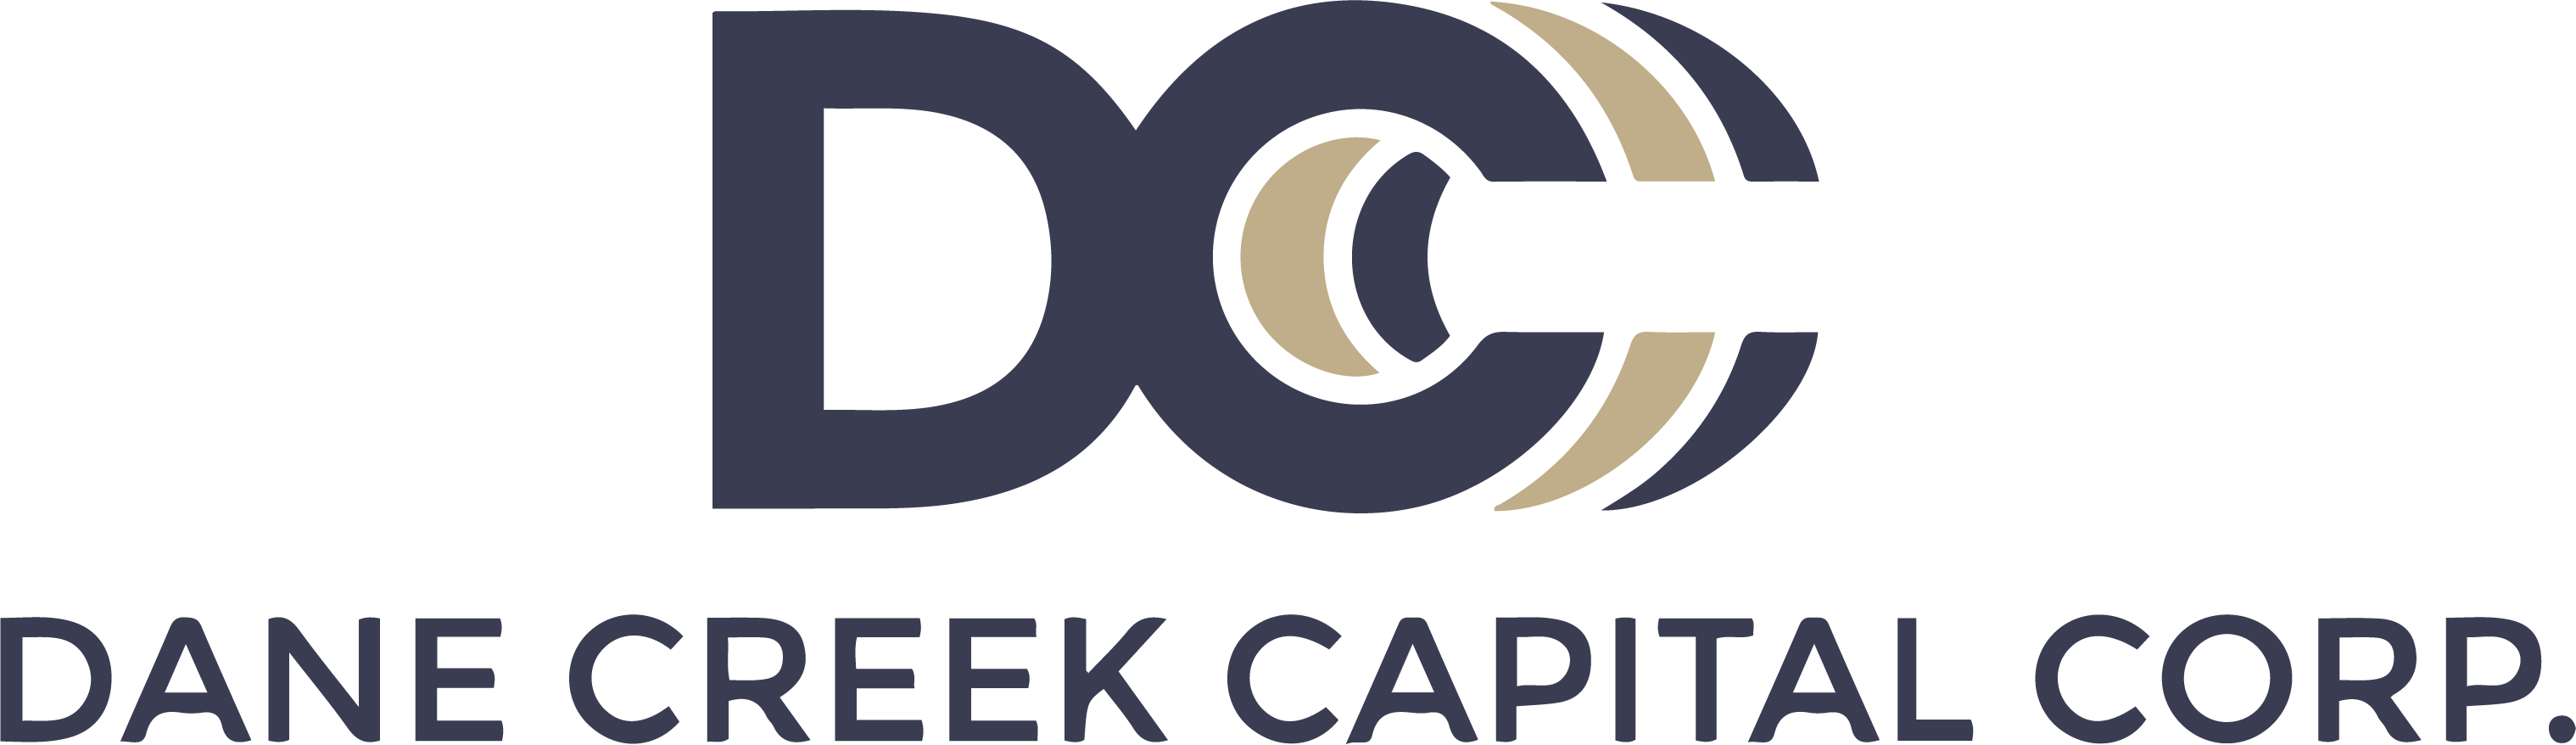 DCCC Logo Full.png